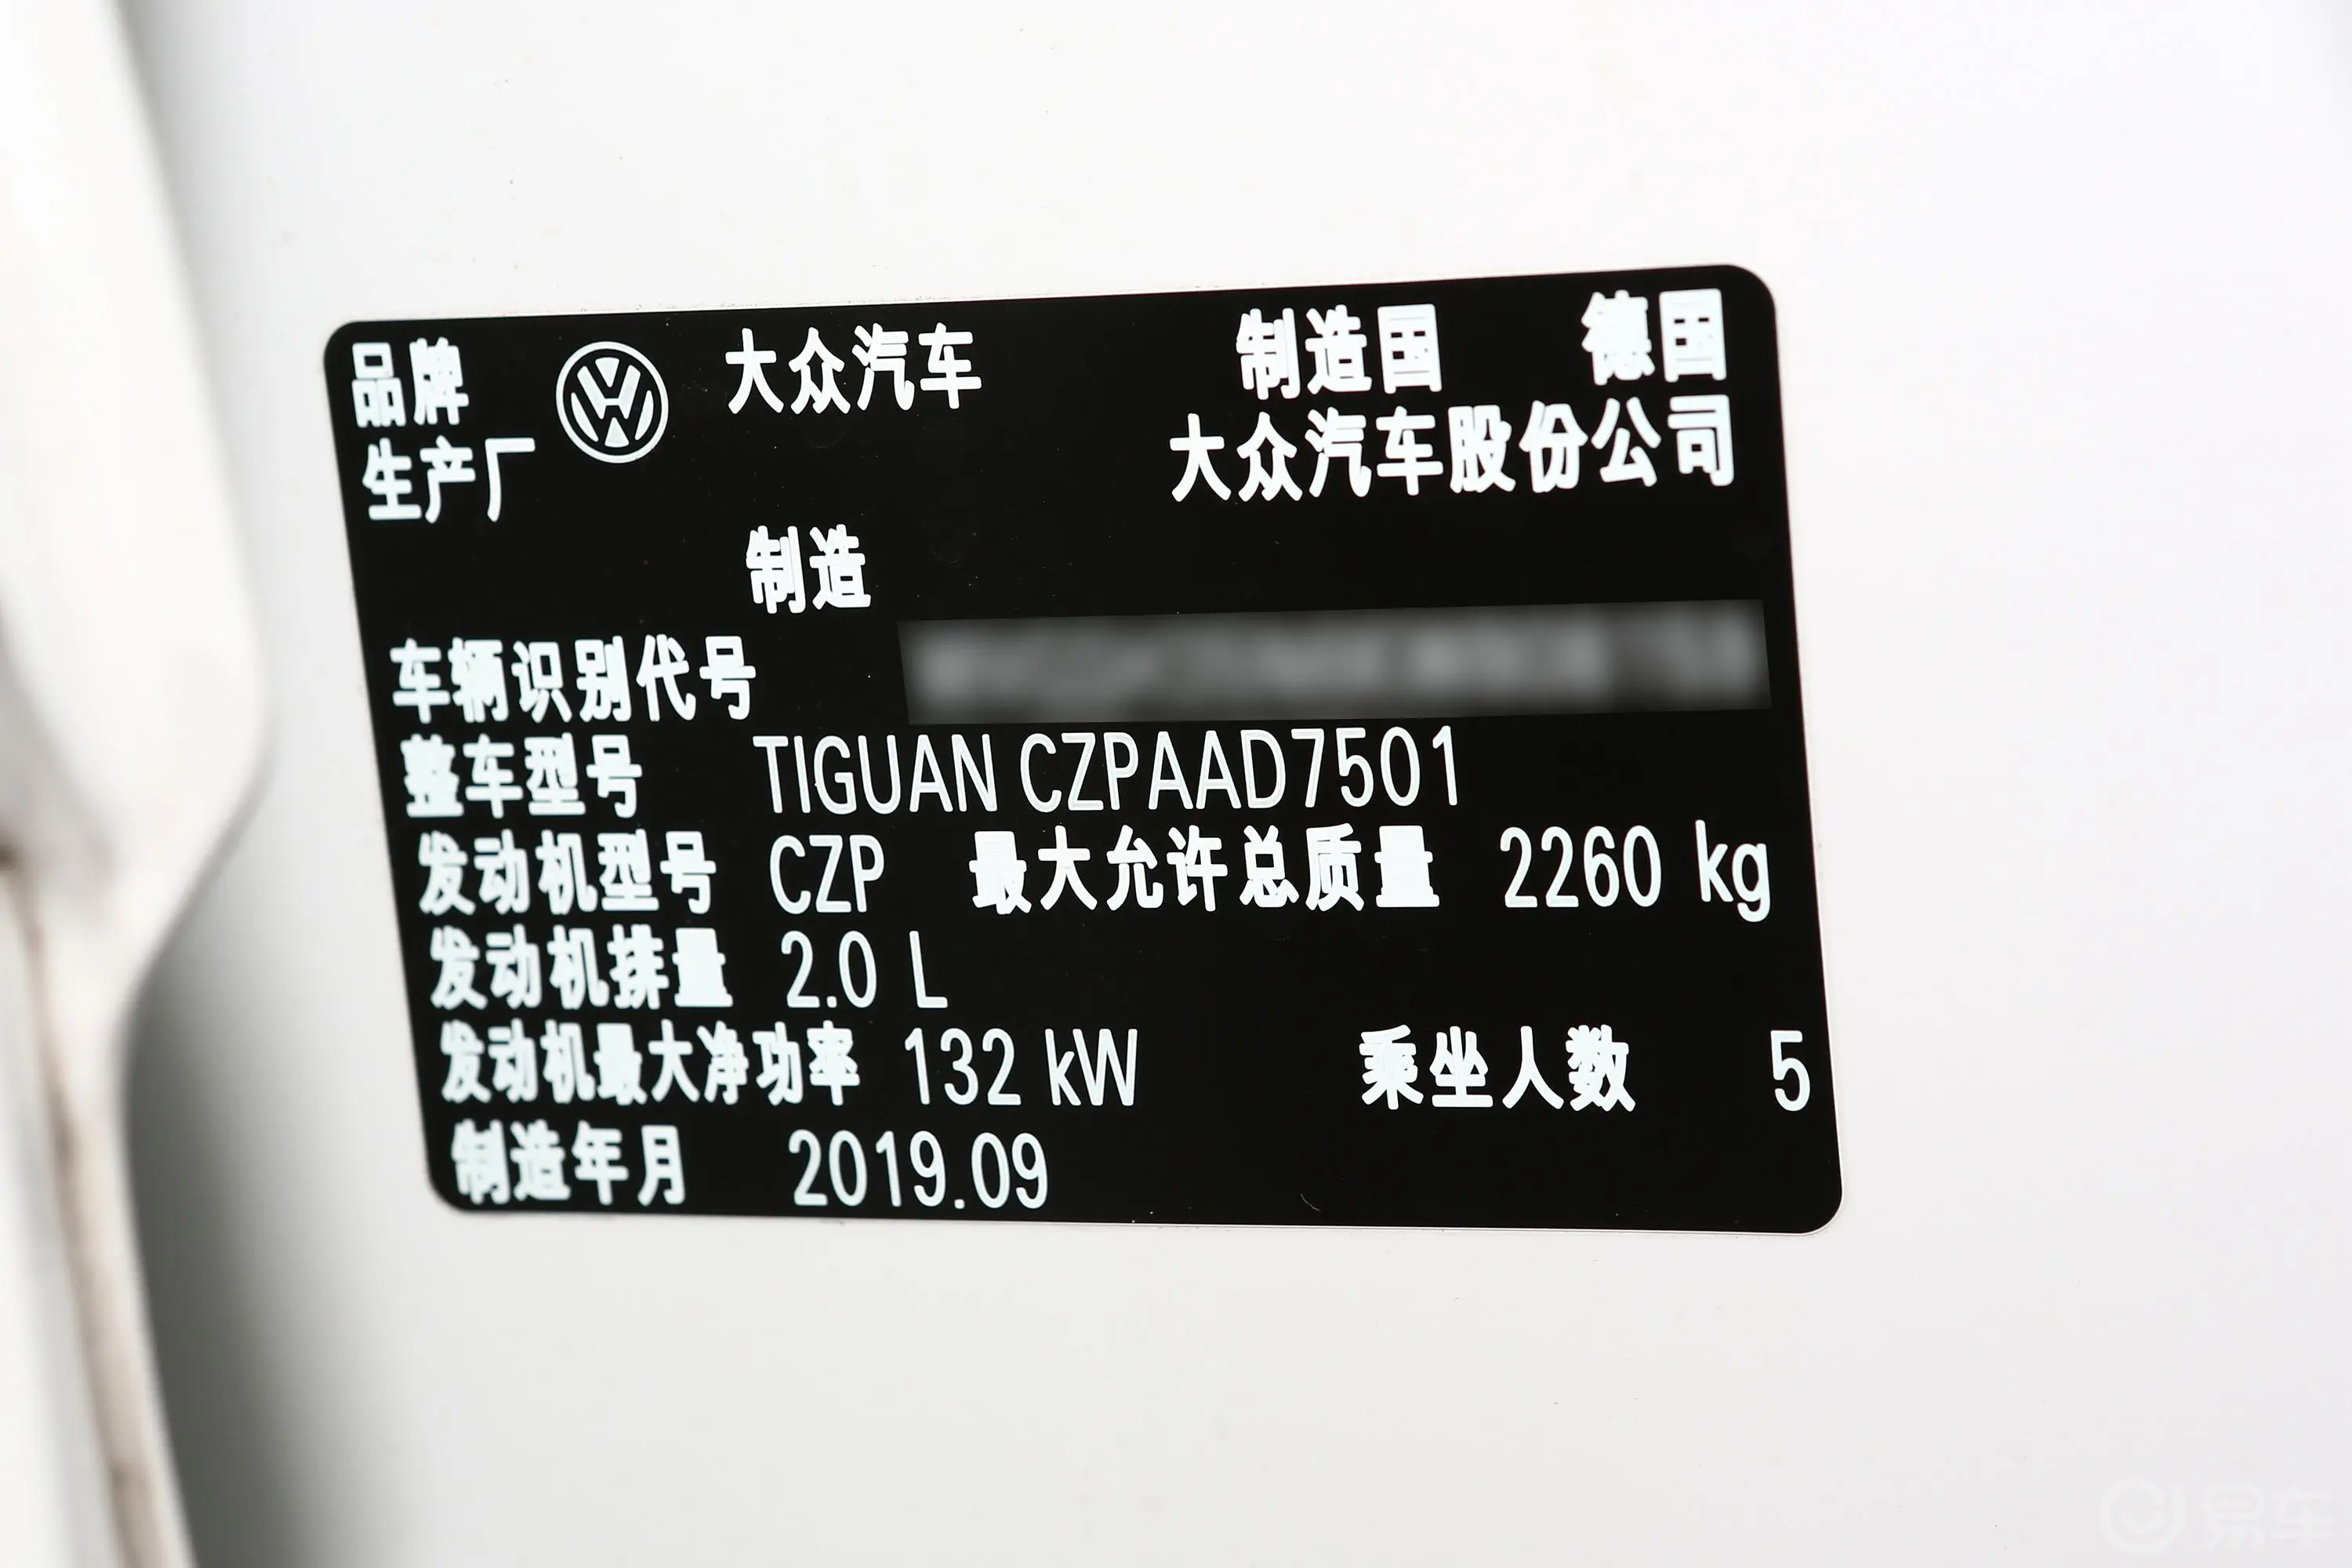 Tiguan330TSI 四驱 高配版车辆信息铭牌